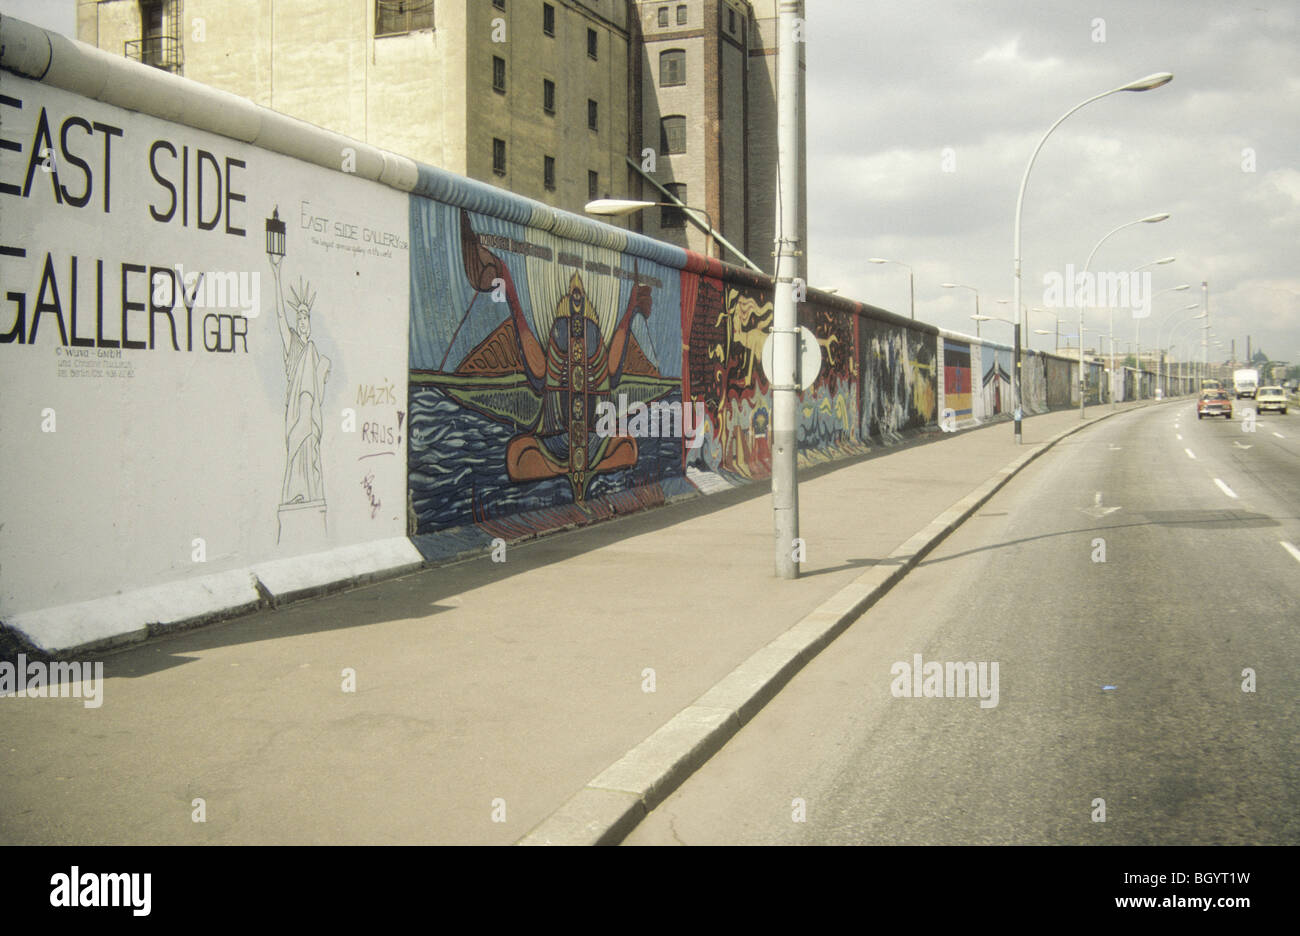 En la galería East Side de Alemania Occidental del muro de Berlín unos meses antes del colapso de la Unión Soviética. Foto de stock